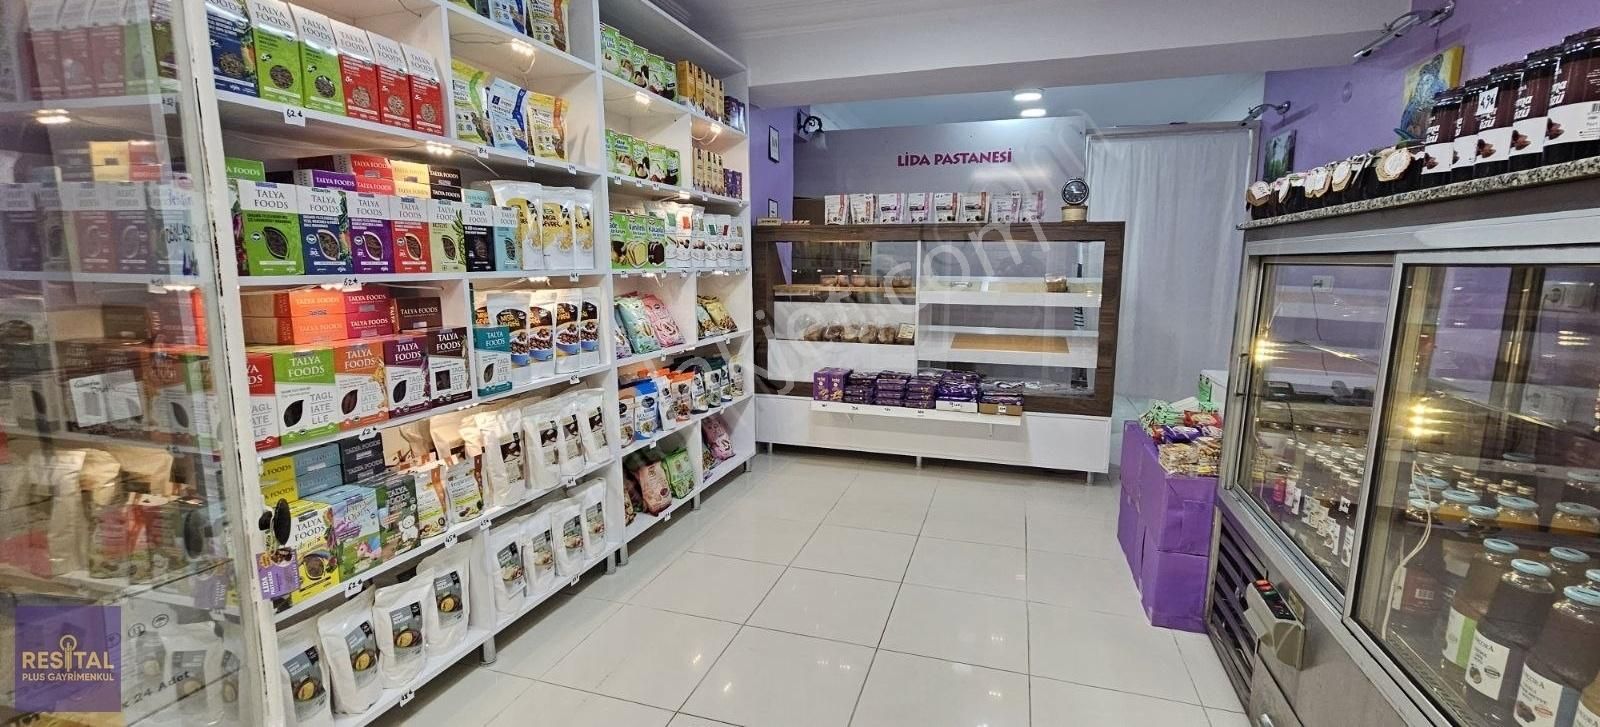 Mudanya Ömerbey Satılık Dükkan & Mağaza Mudanya Halitpaşa Caddesi Mudanya Çarşısında Satılık Dükkan